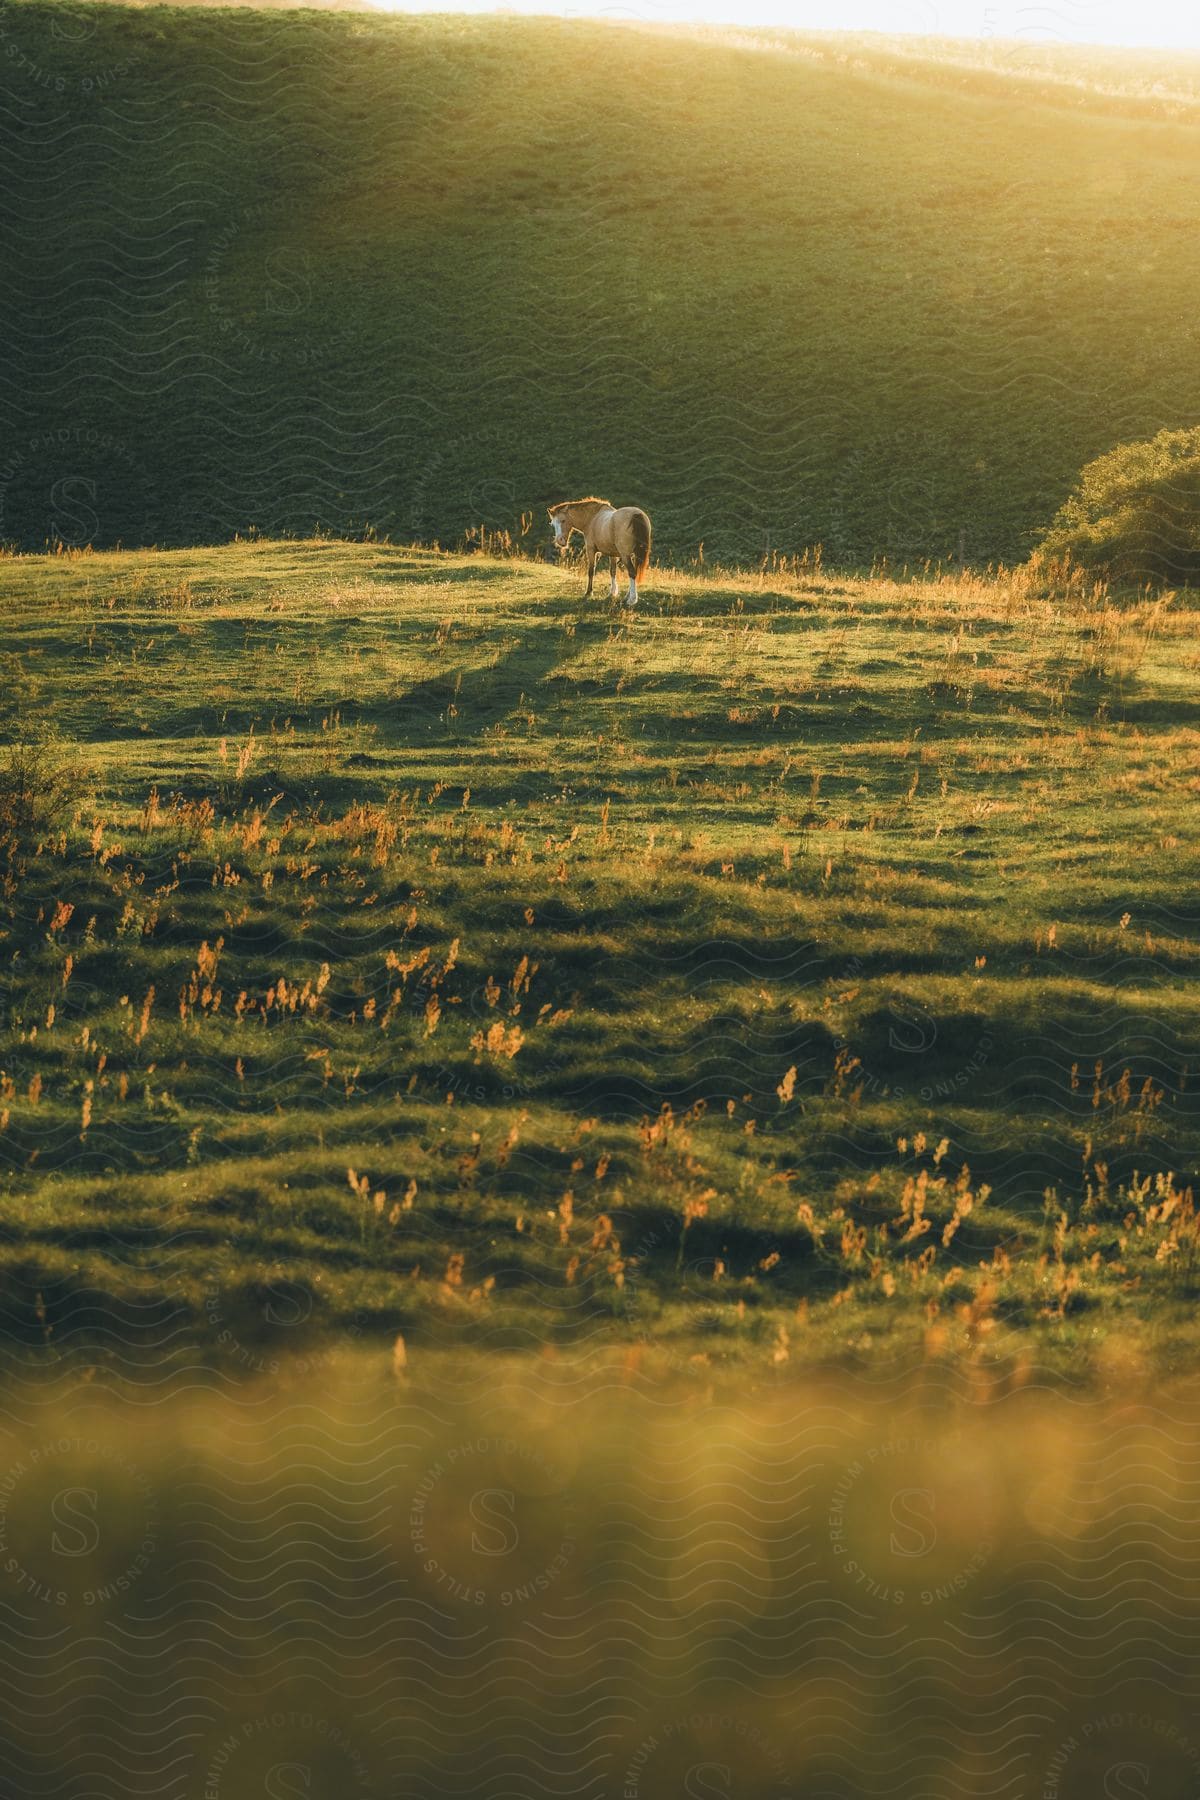 a horse grazes in an open field